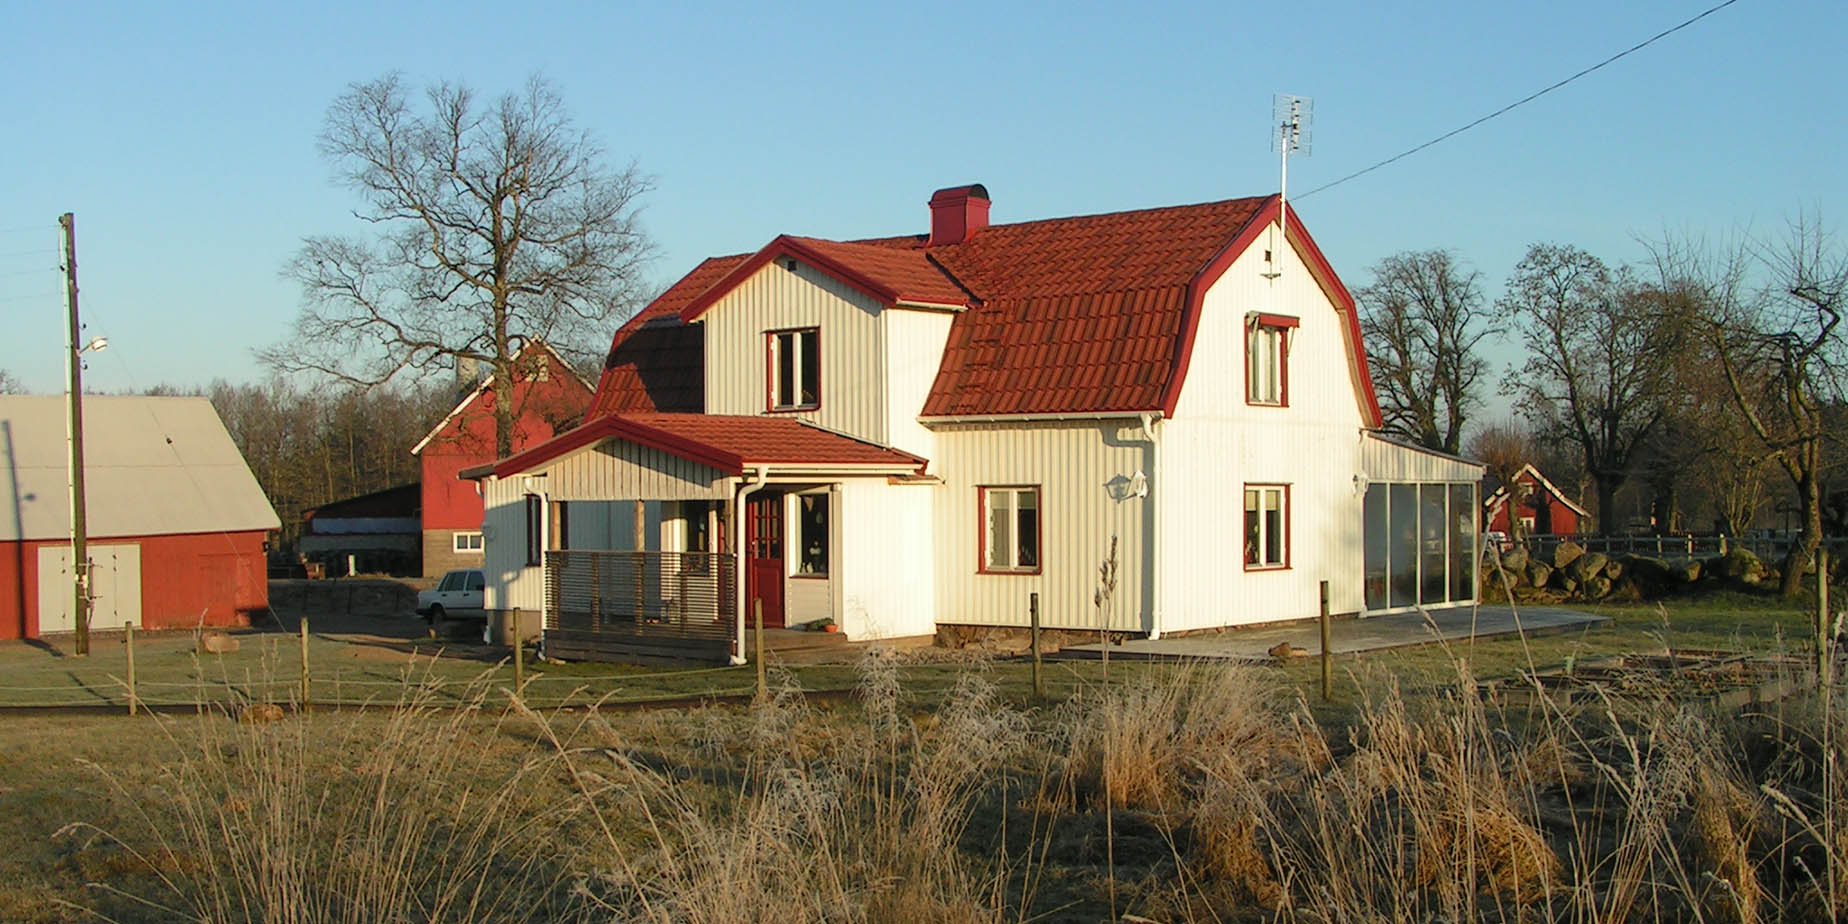 Vimle,Herrljunga 2007-2015